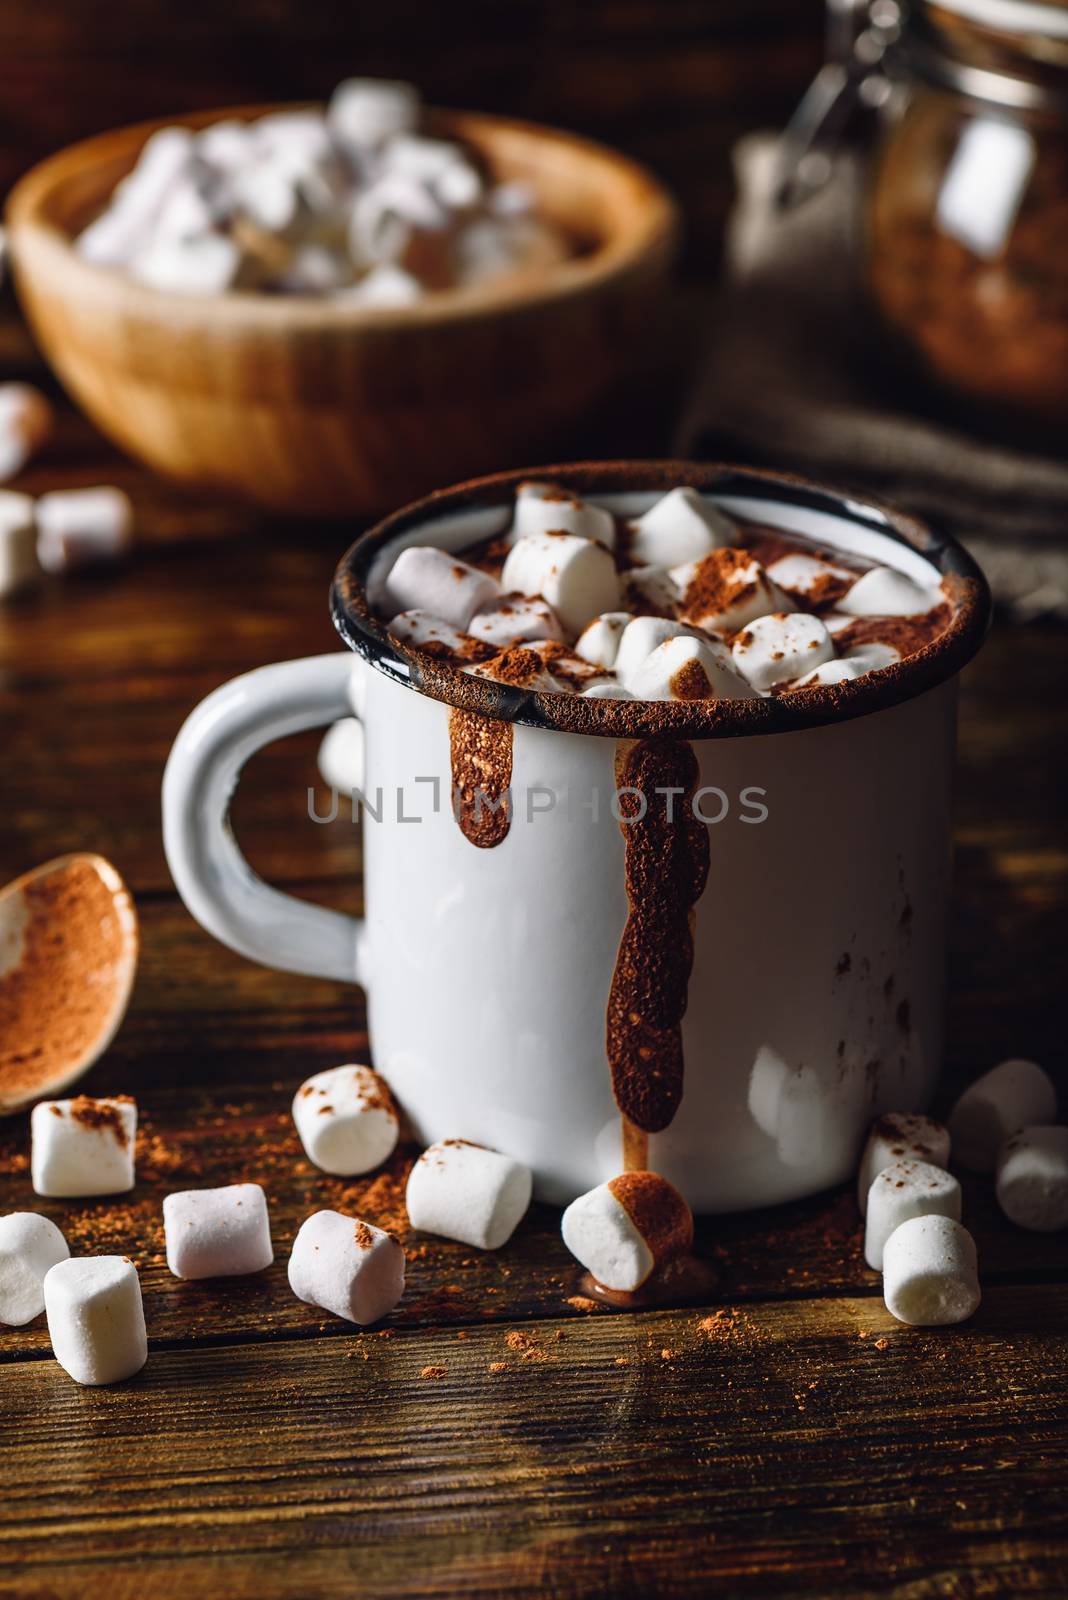 Cocoa with Marshmallow. by Seva_blsv